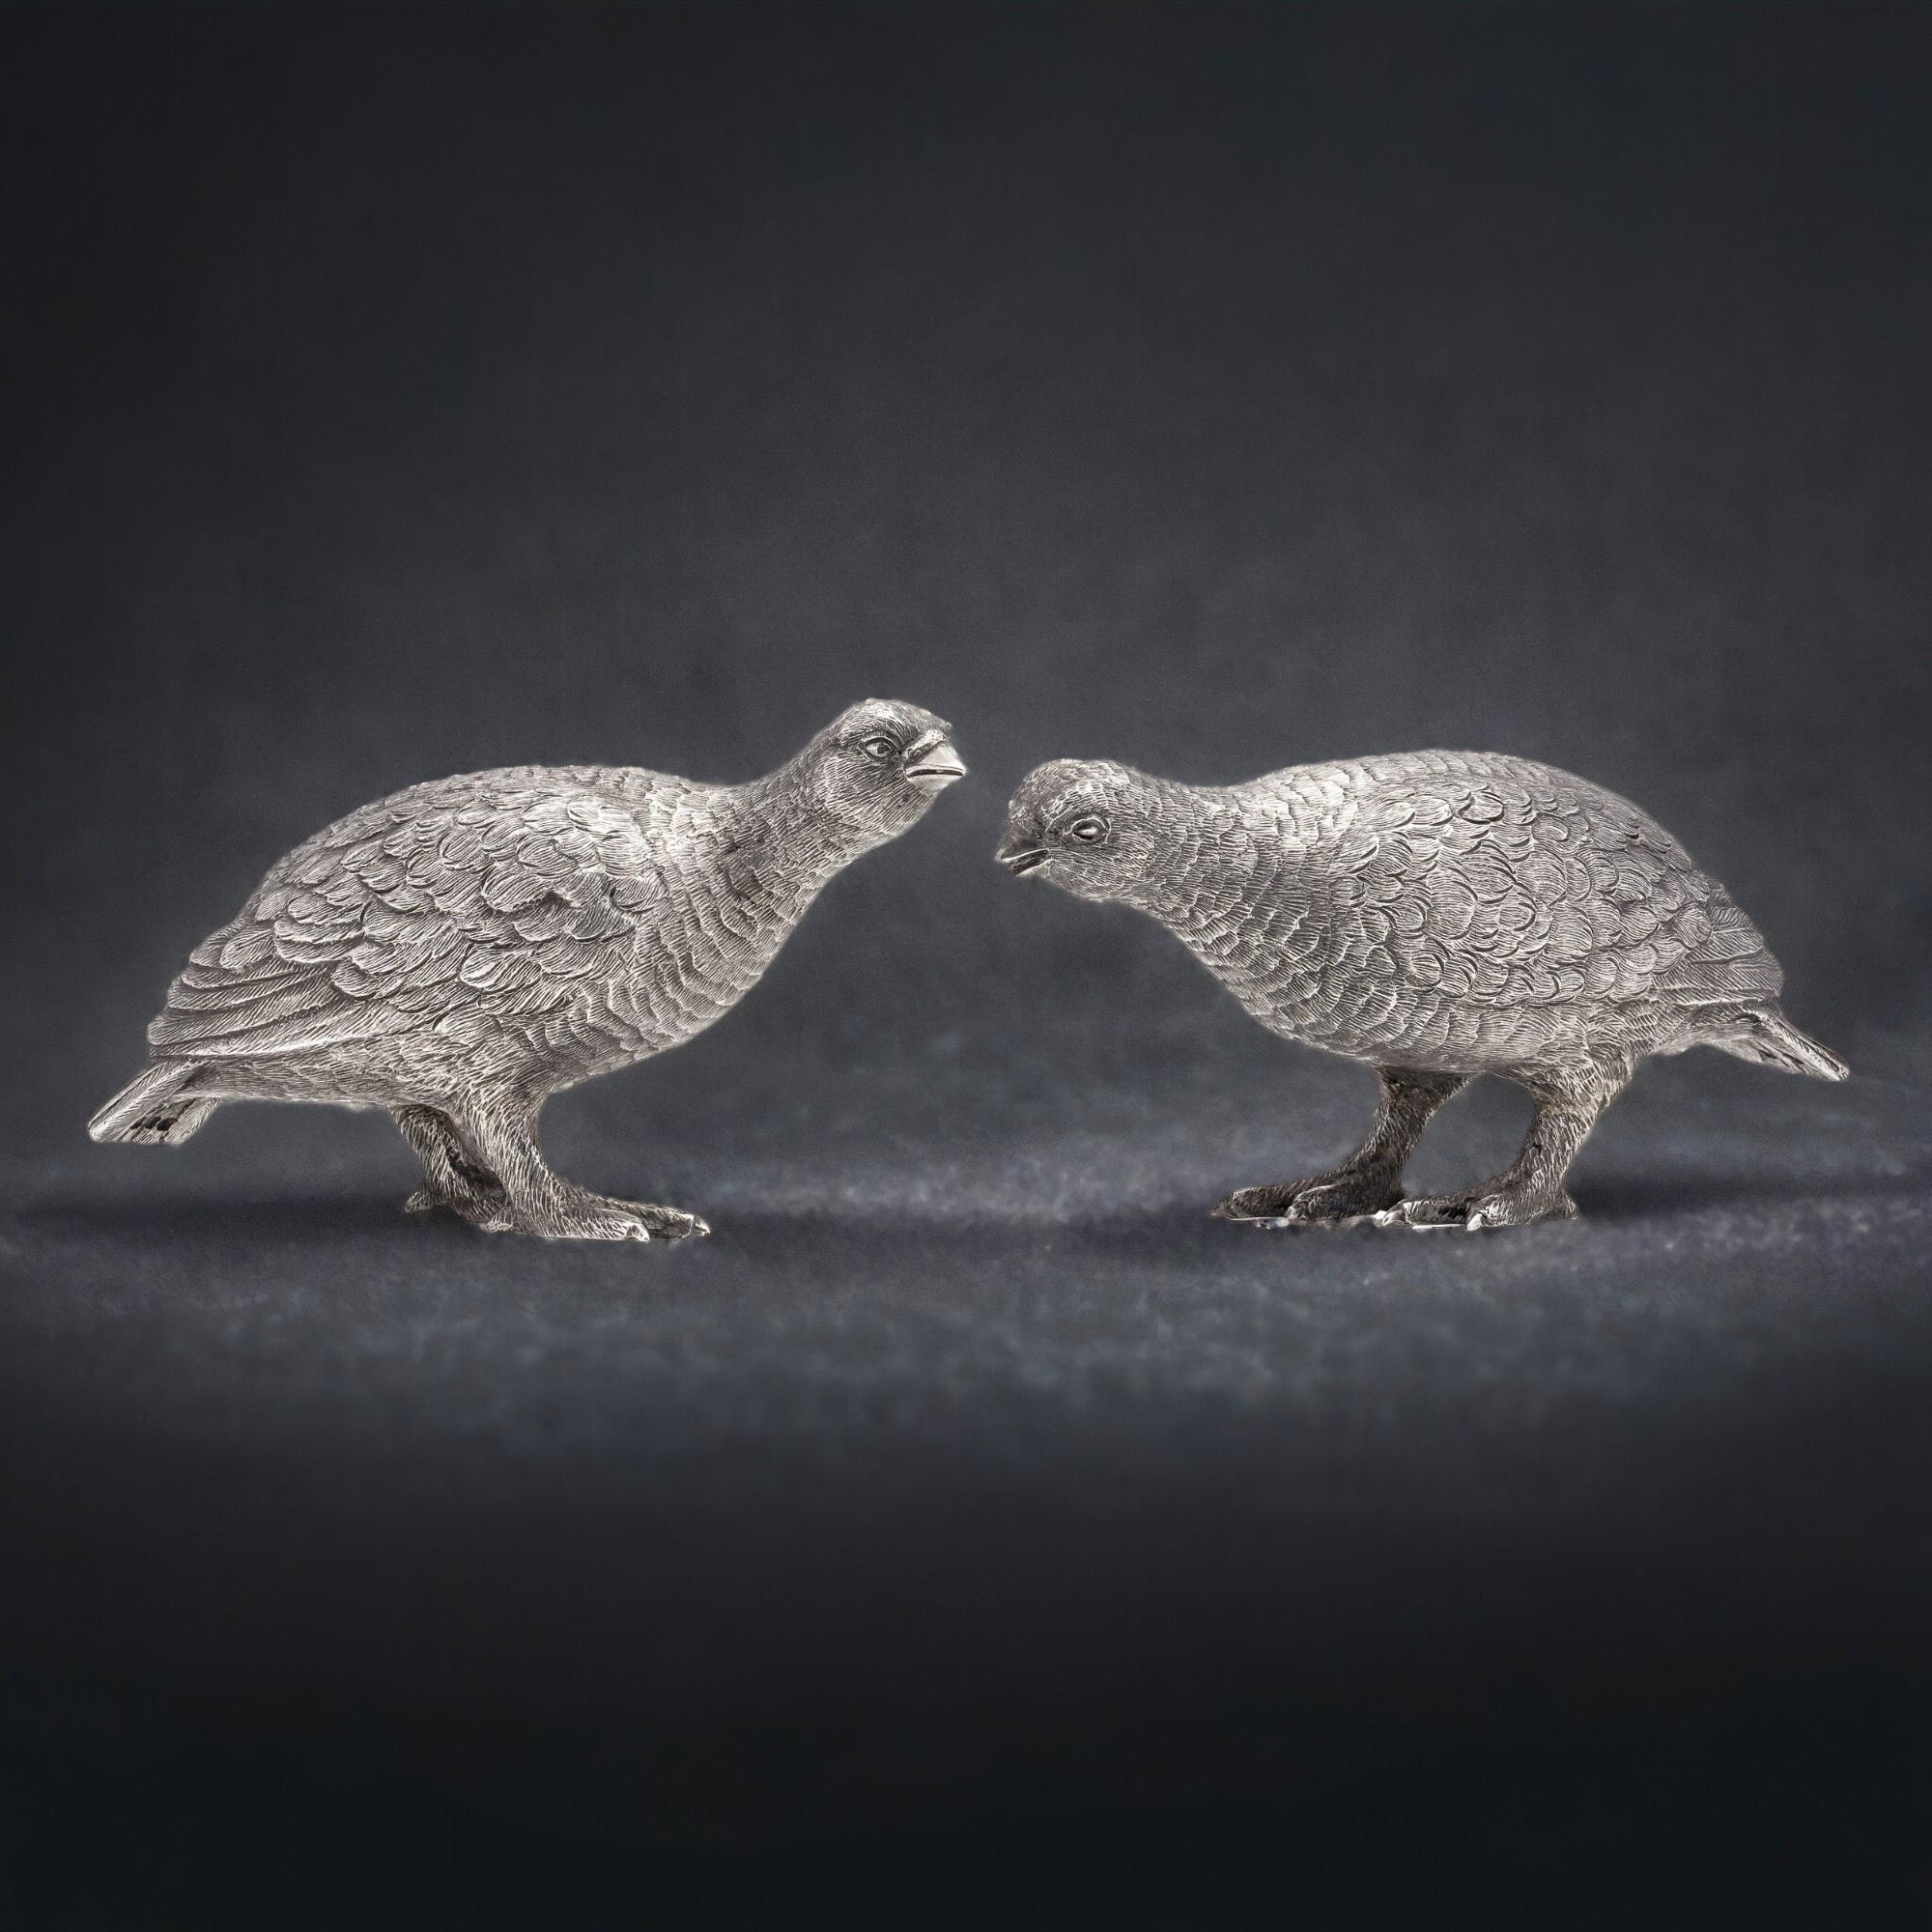 Paire de modèles d'oiseaux tétras en argent sterling vintage. 
Fabriqué en Angleterre, Londres, 1966
Fabricant : William Comyns & Sons Ltd. 
Entièrement poinçonné.

Dimensions :
Taille du 1er oiseau : Longueur x largeur x hauteur : 13 x 4,3 x 6,5 cm